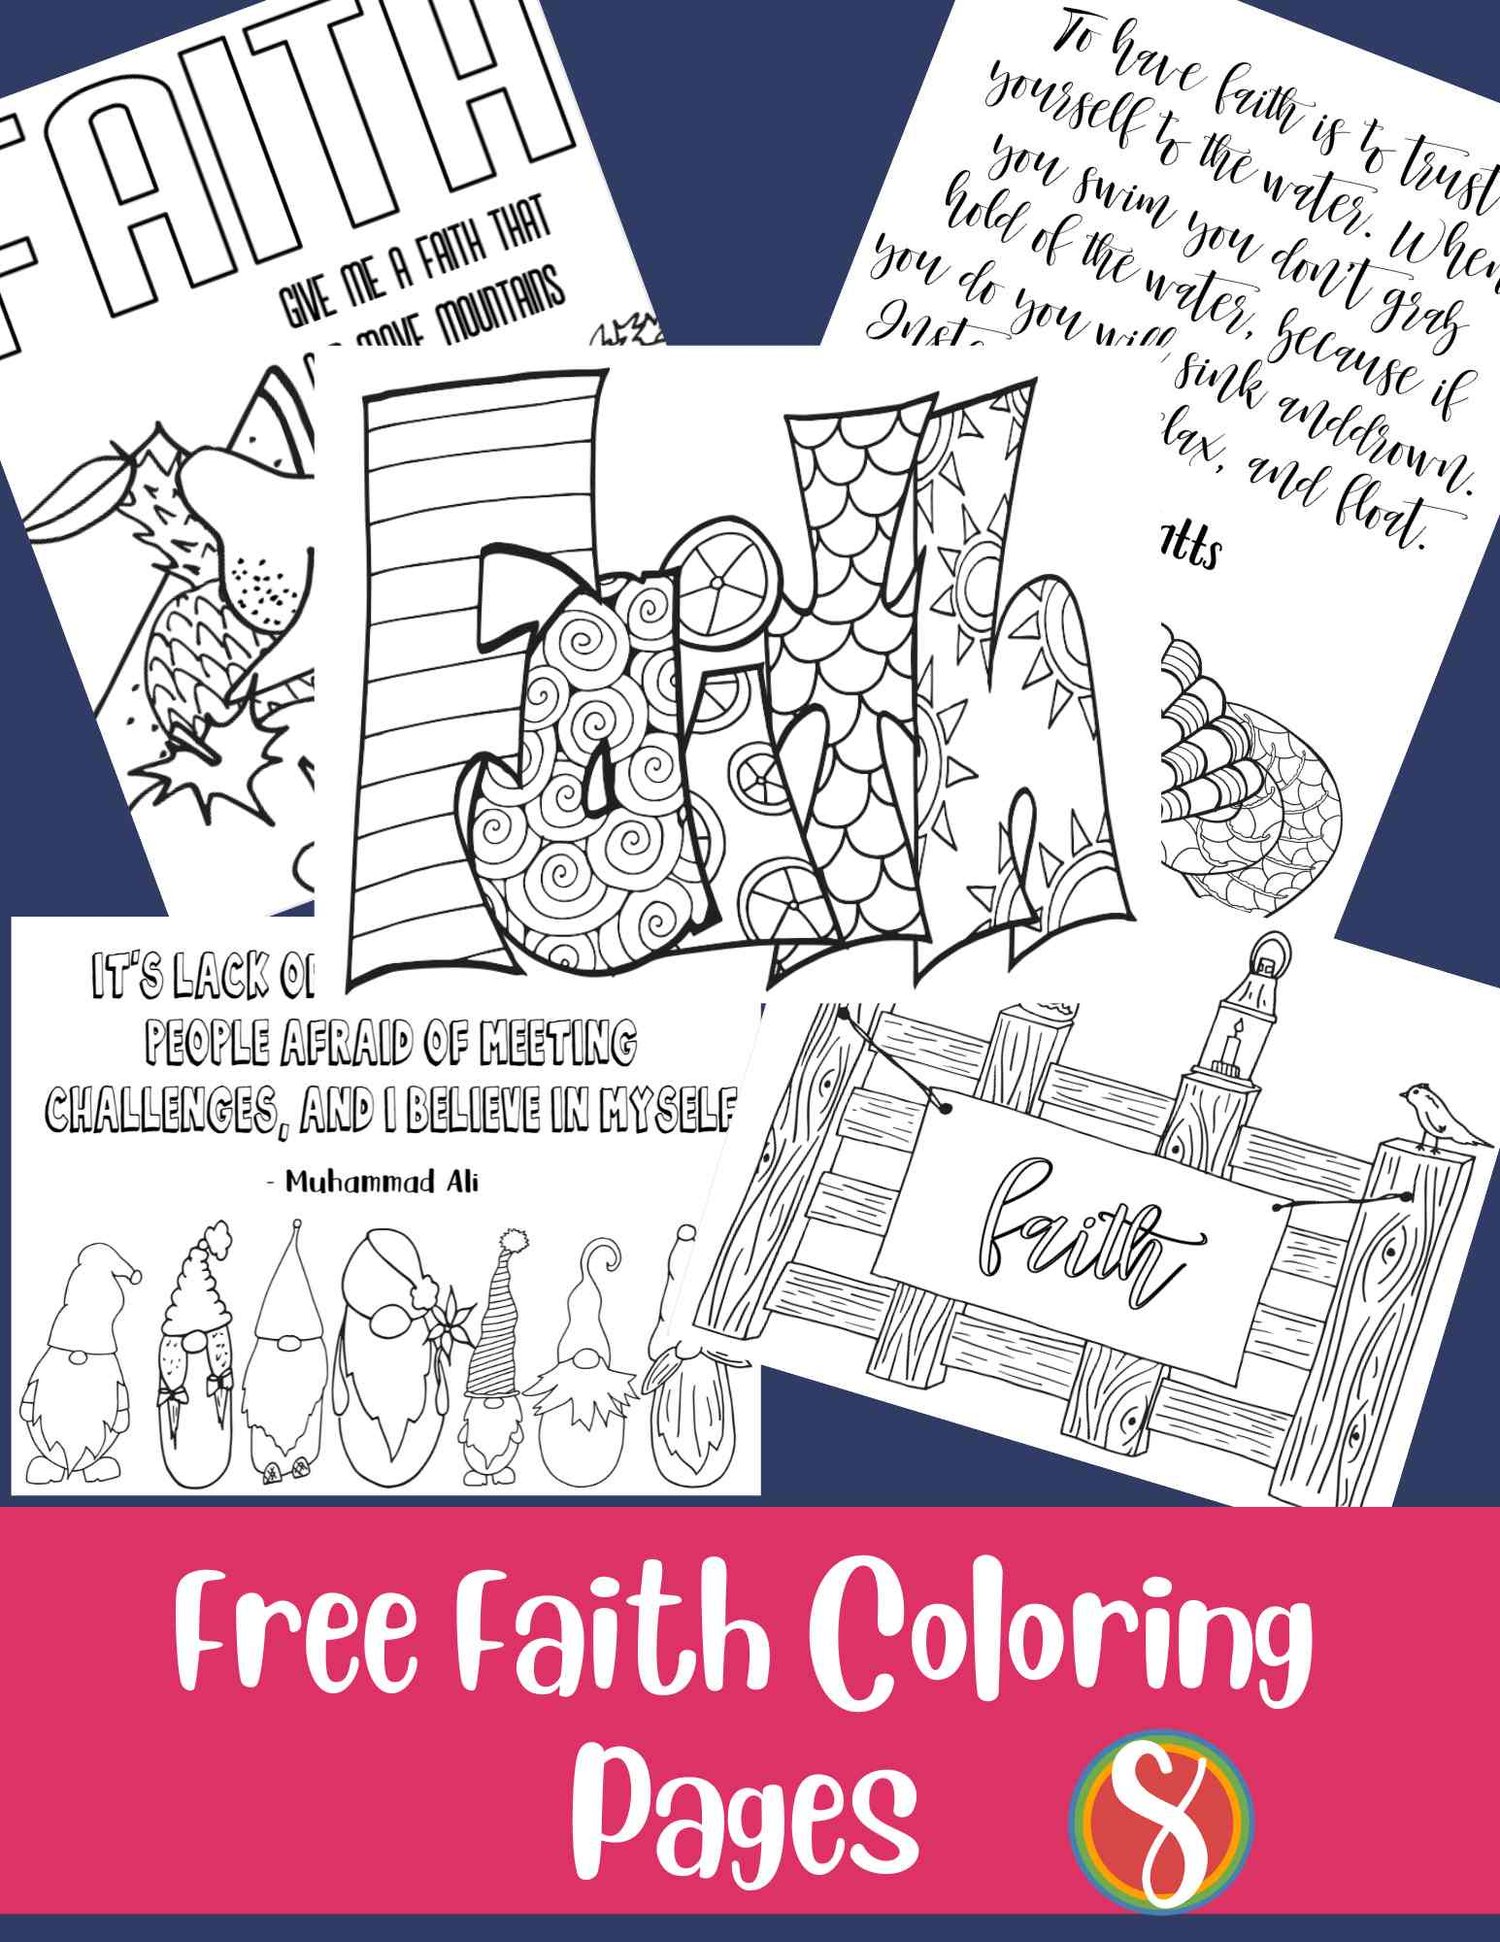 Free faith coloring pages â stevie doodles